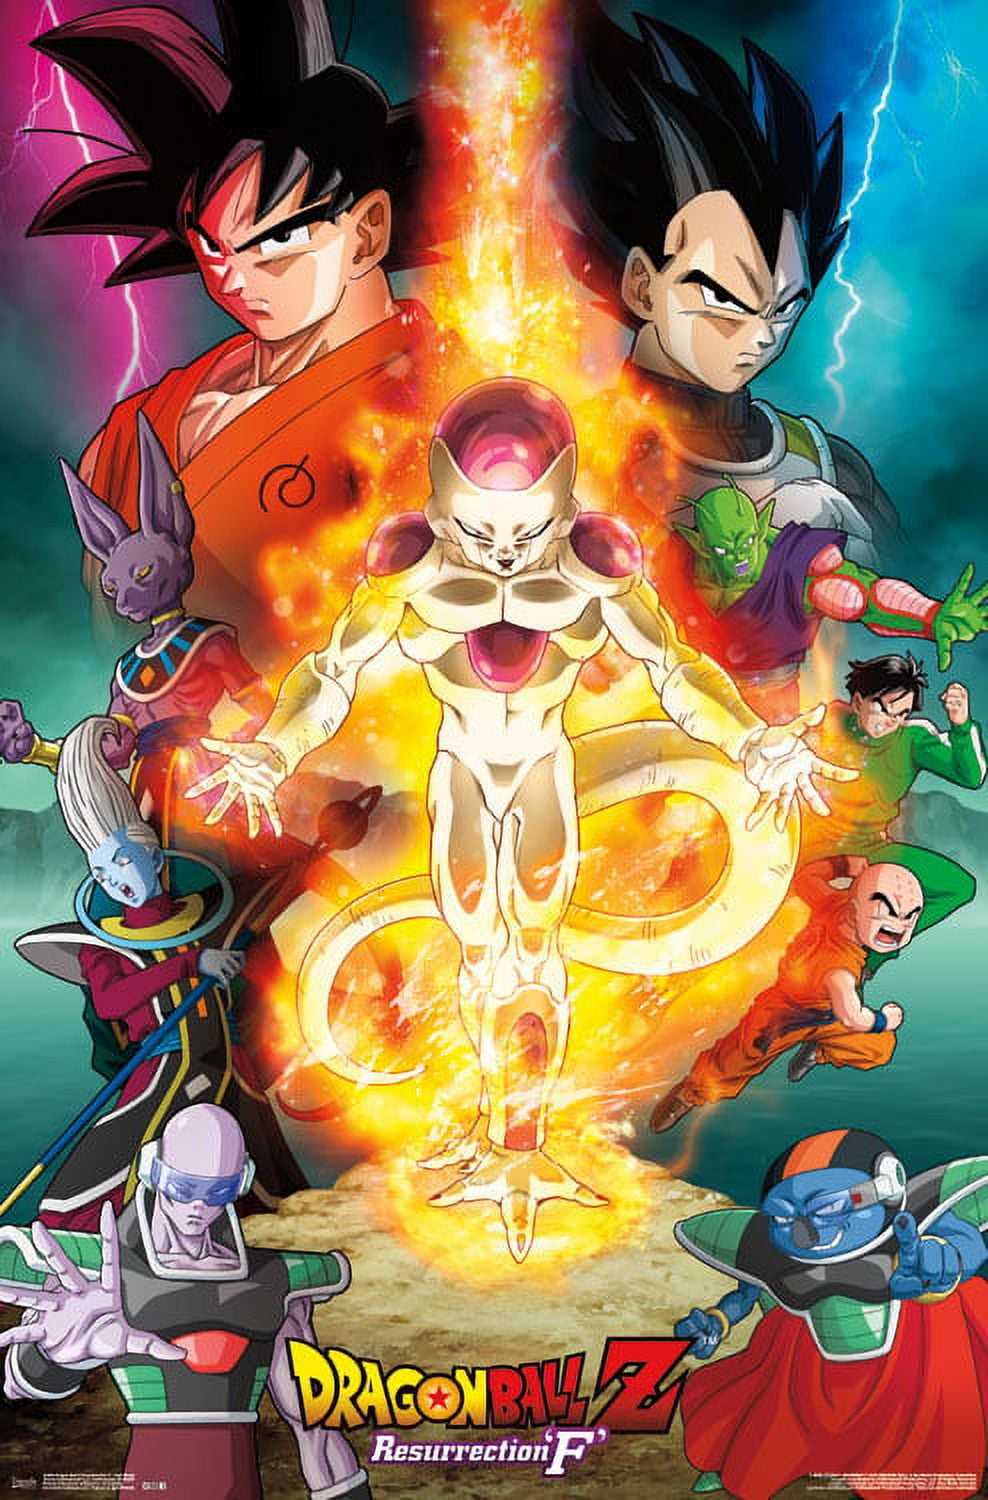 Trends International Dragon Ball: Super - Villain Wall Poster, 22.375 x 34